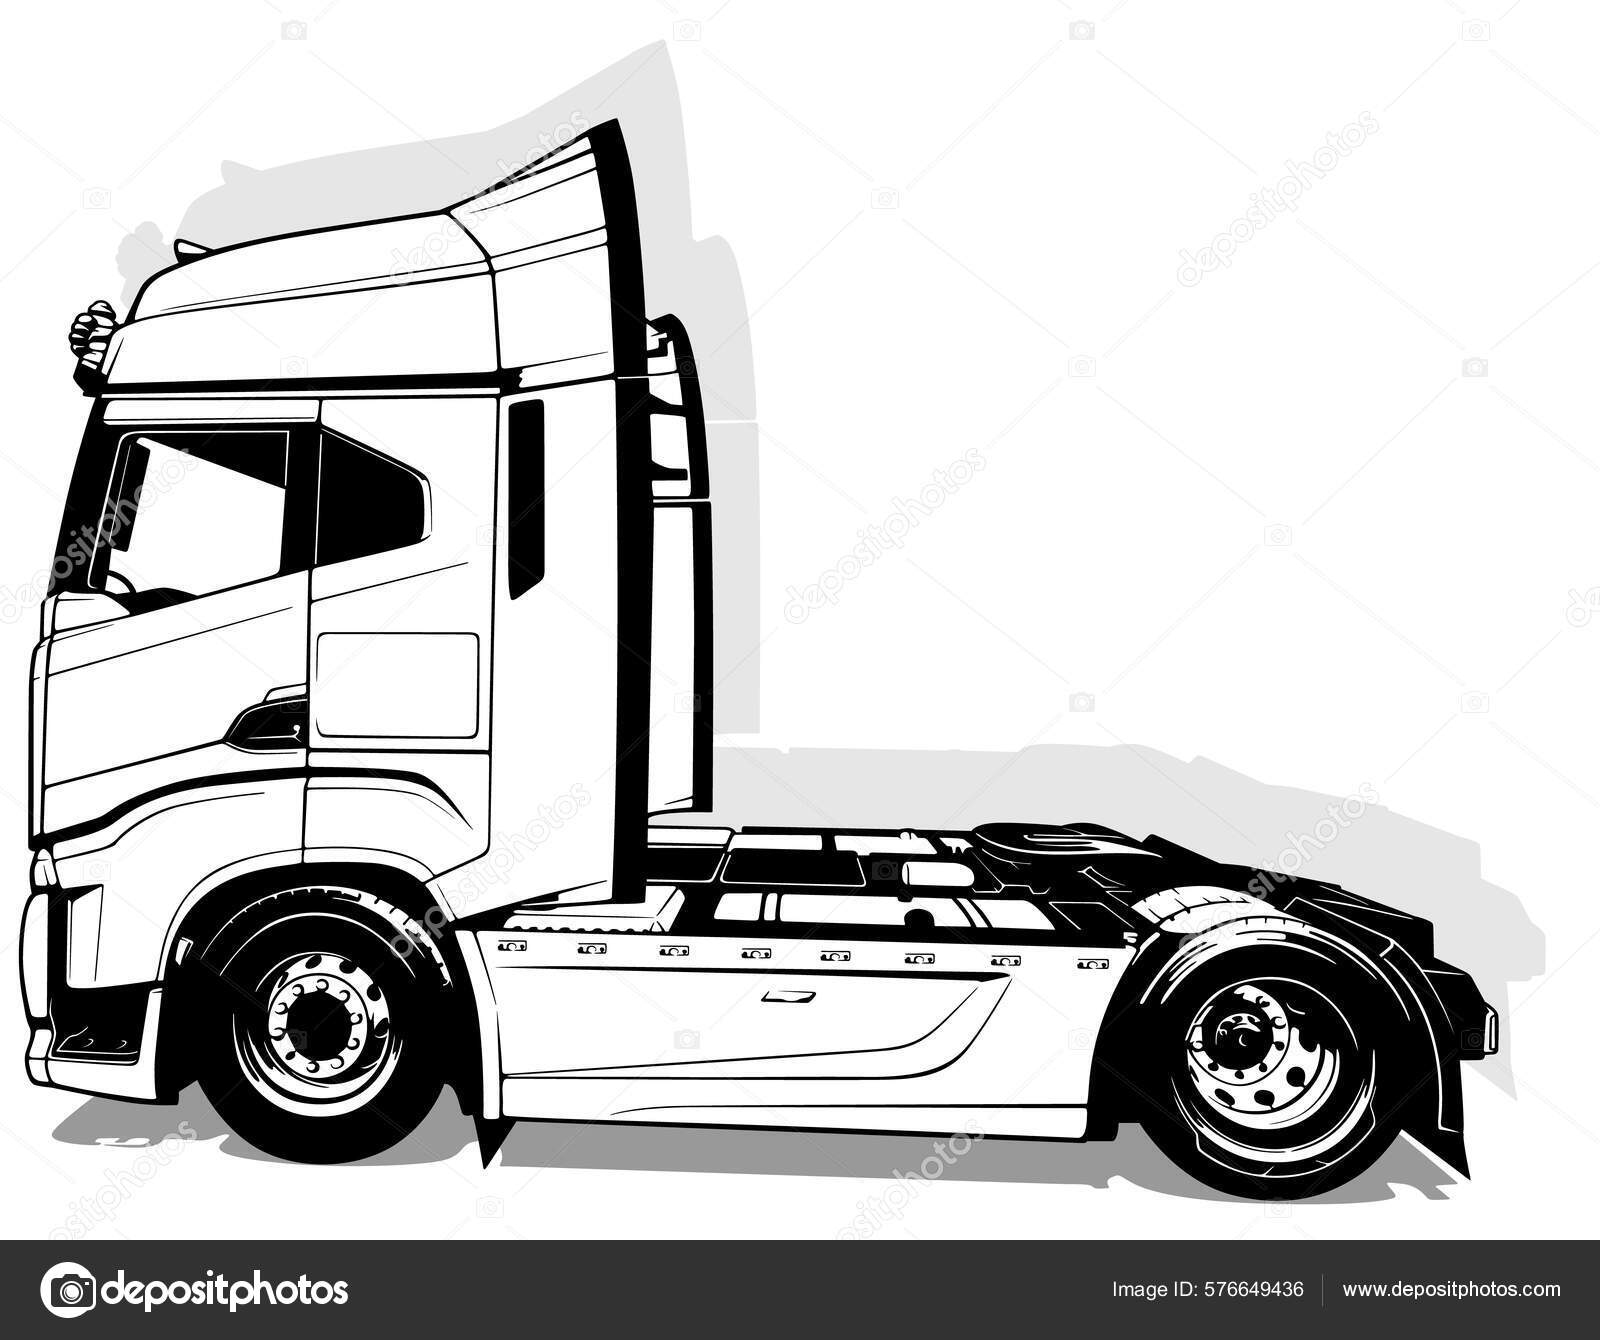 Um desenho preto e branco de um caminhão.